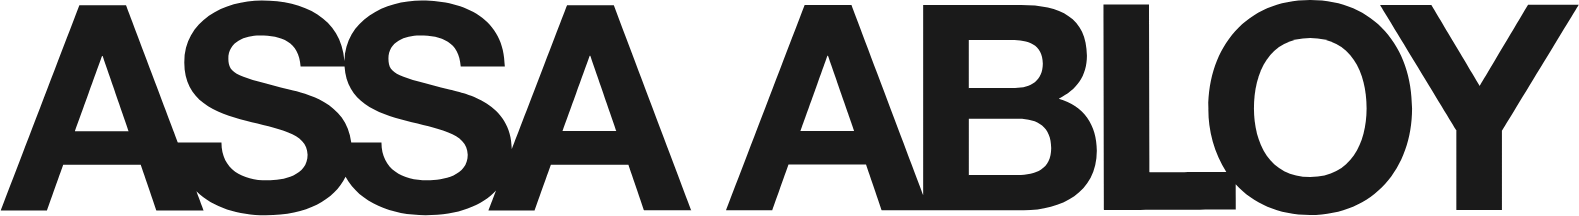 Assa Abloy
 logo large (transparent PNG)